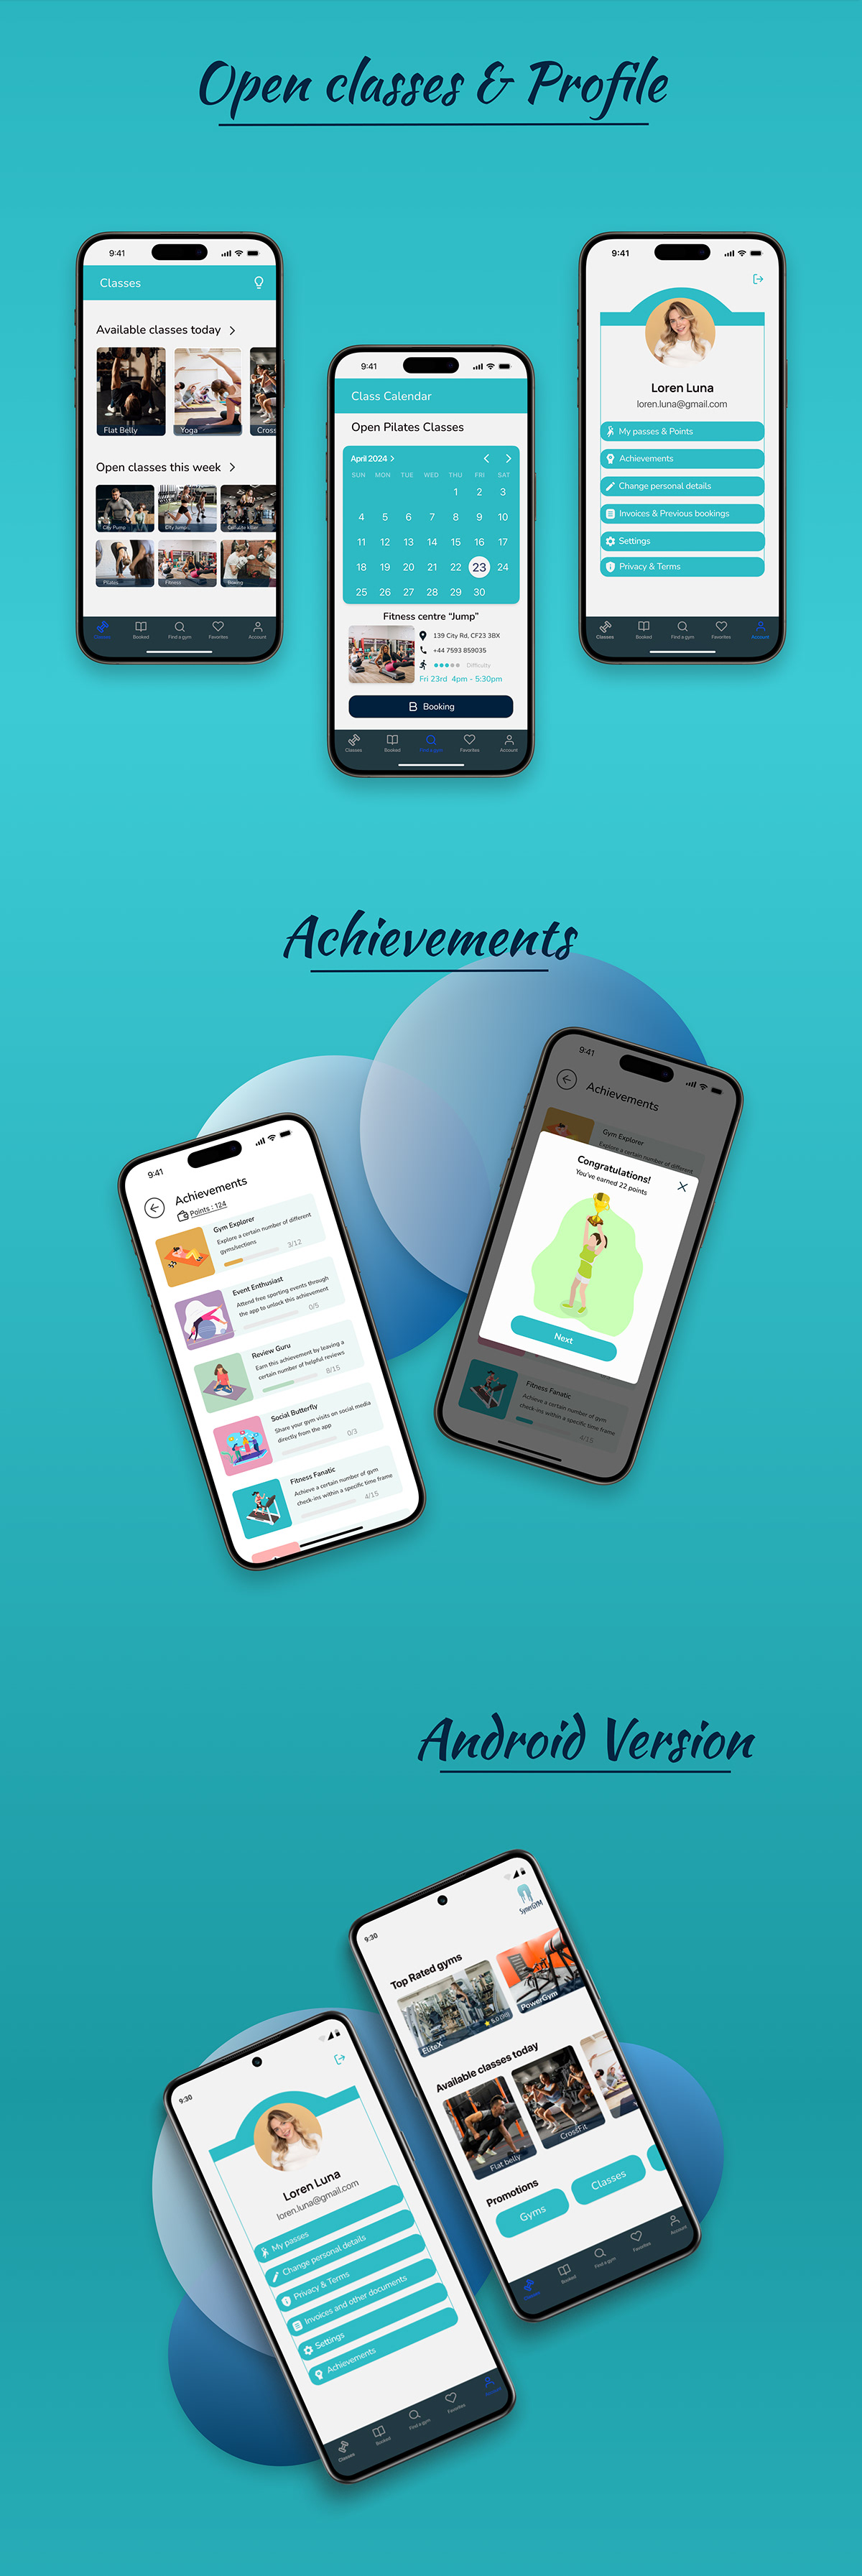 Mobile app UI/UX design gym fitness app ui design app mobile app design user experience